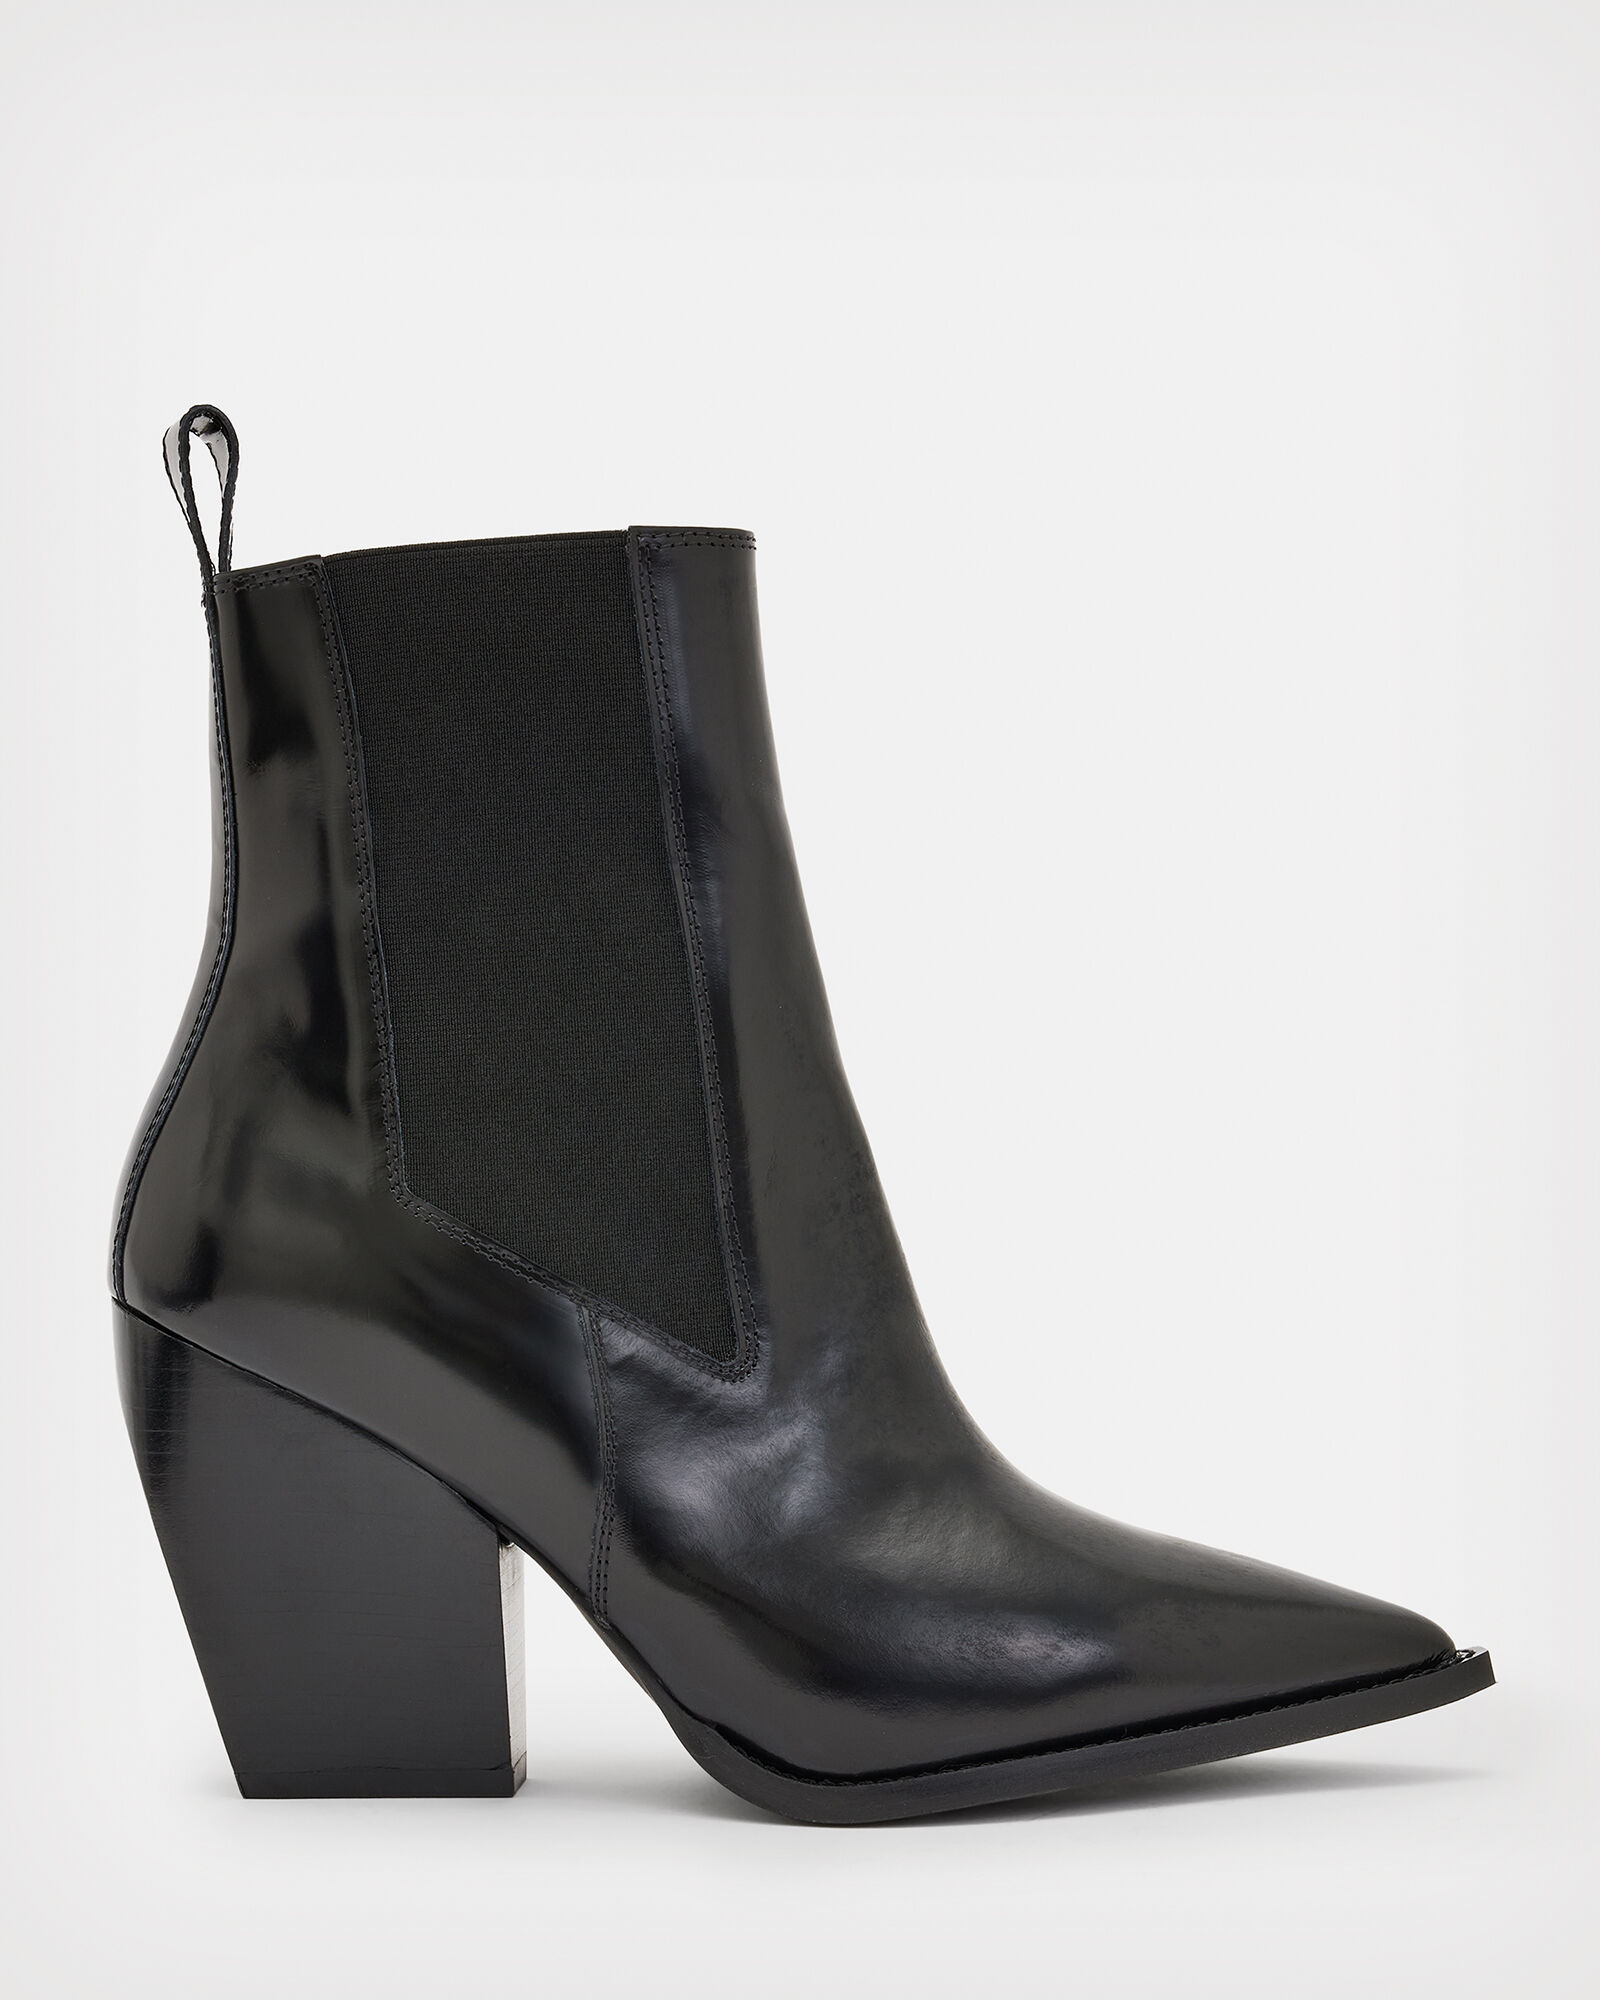 Ria Leather Boots Black | ALLSAINTS US